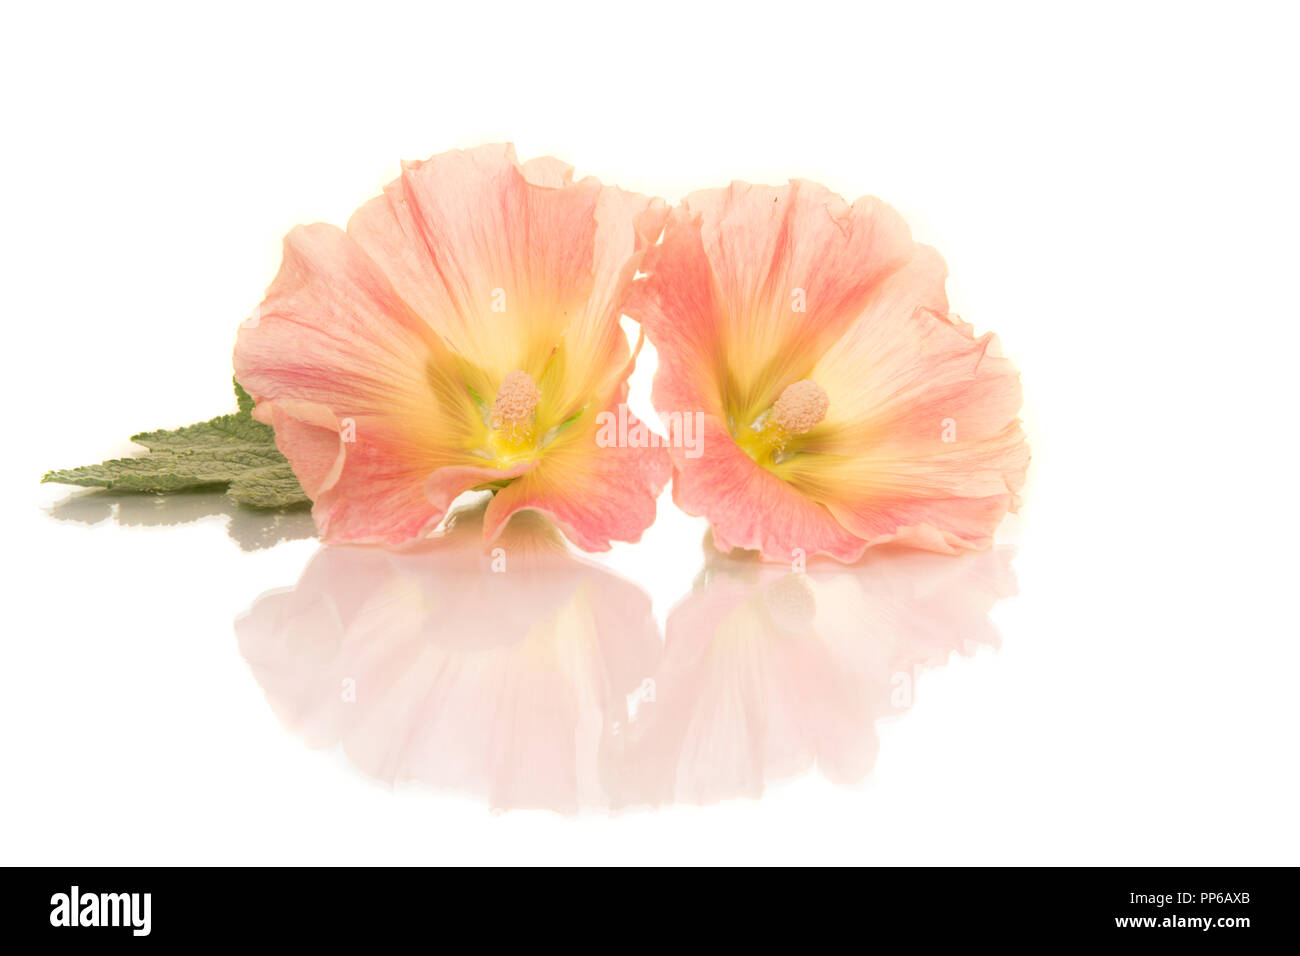 Due hollyhock le teste dei fiori giacenti su uno sfondo bianco con la riflessione Foto Stock